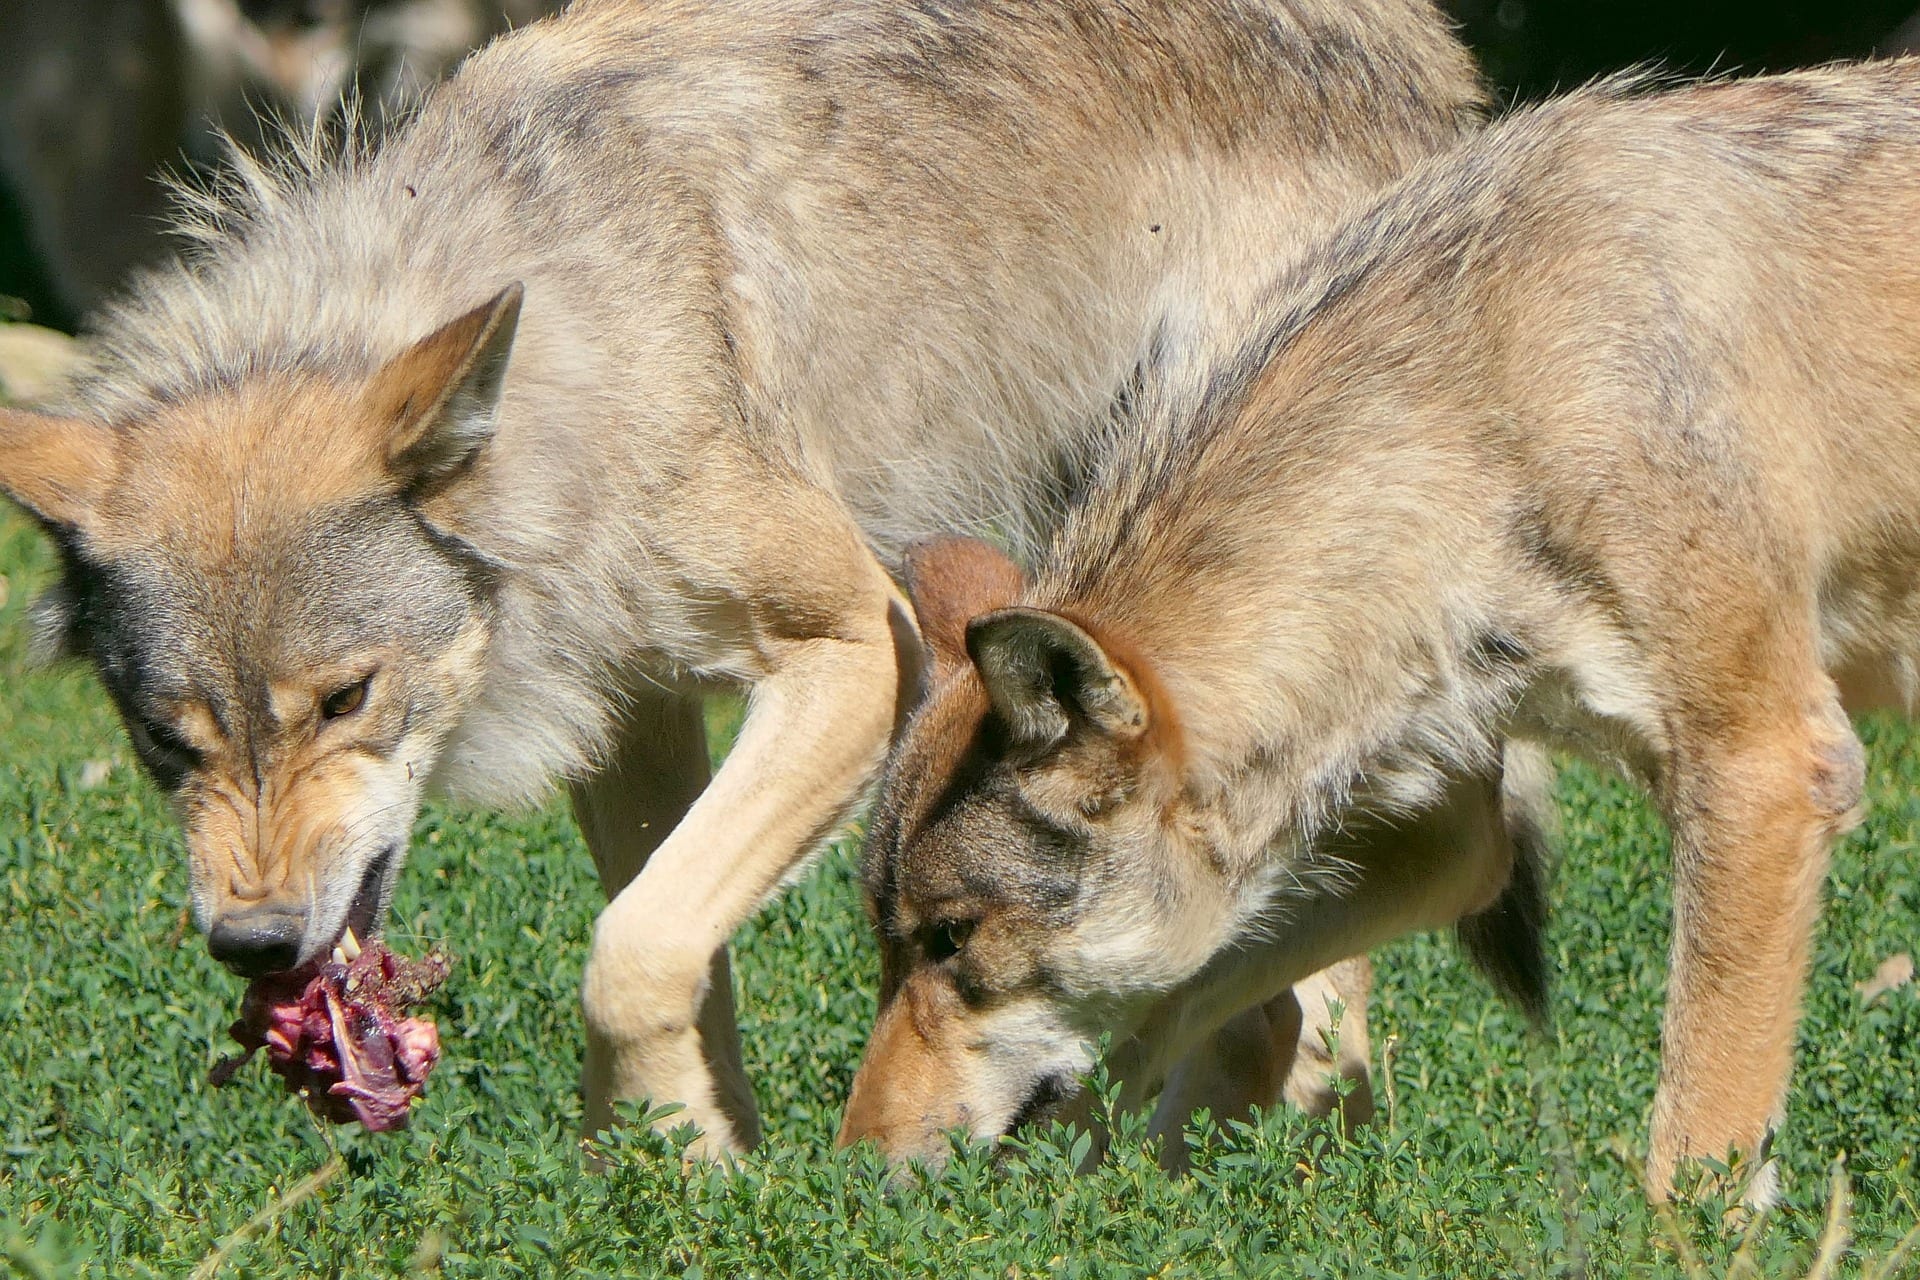 https://pixabay.com/en/wolf-wolves-eat-carnivores-3549410/